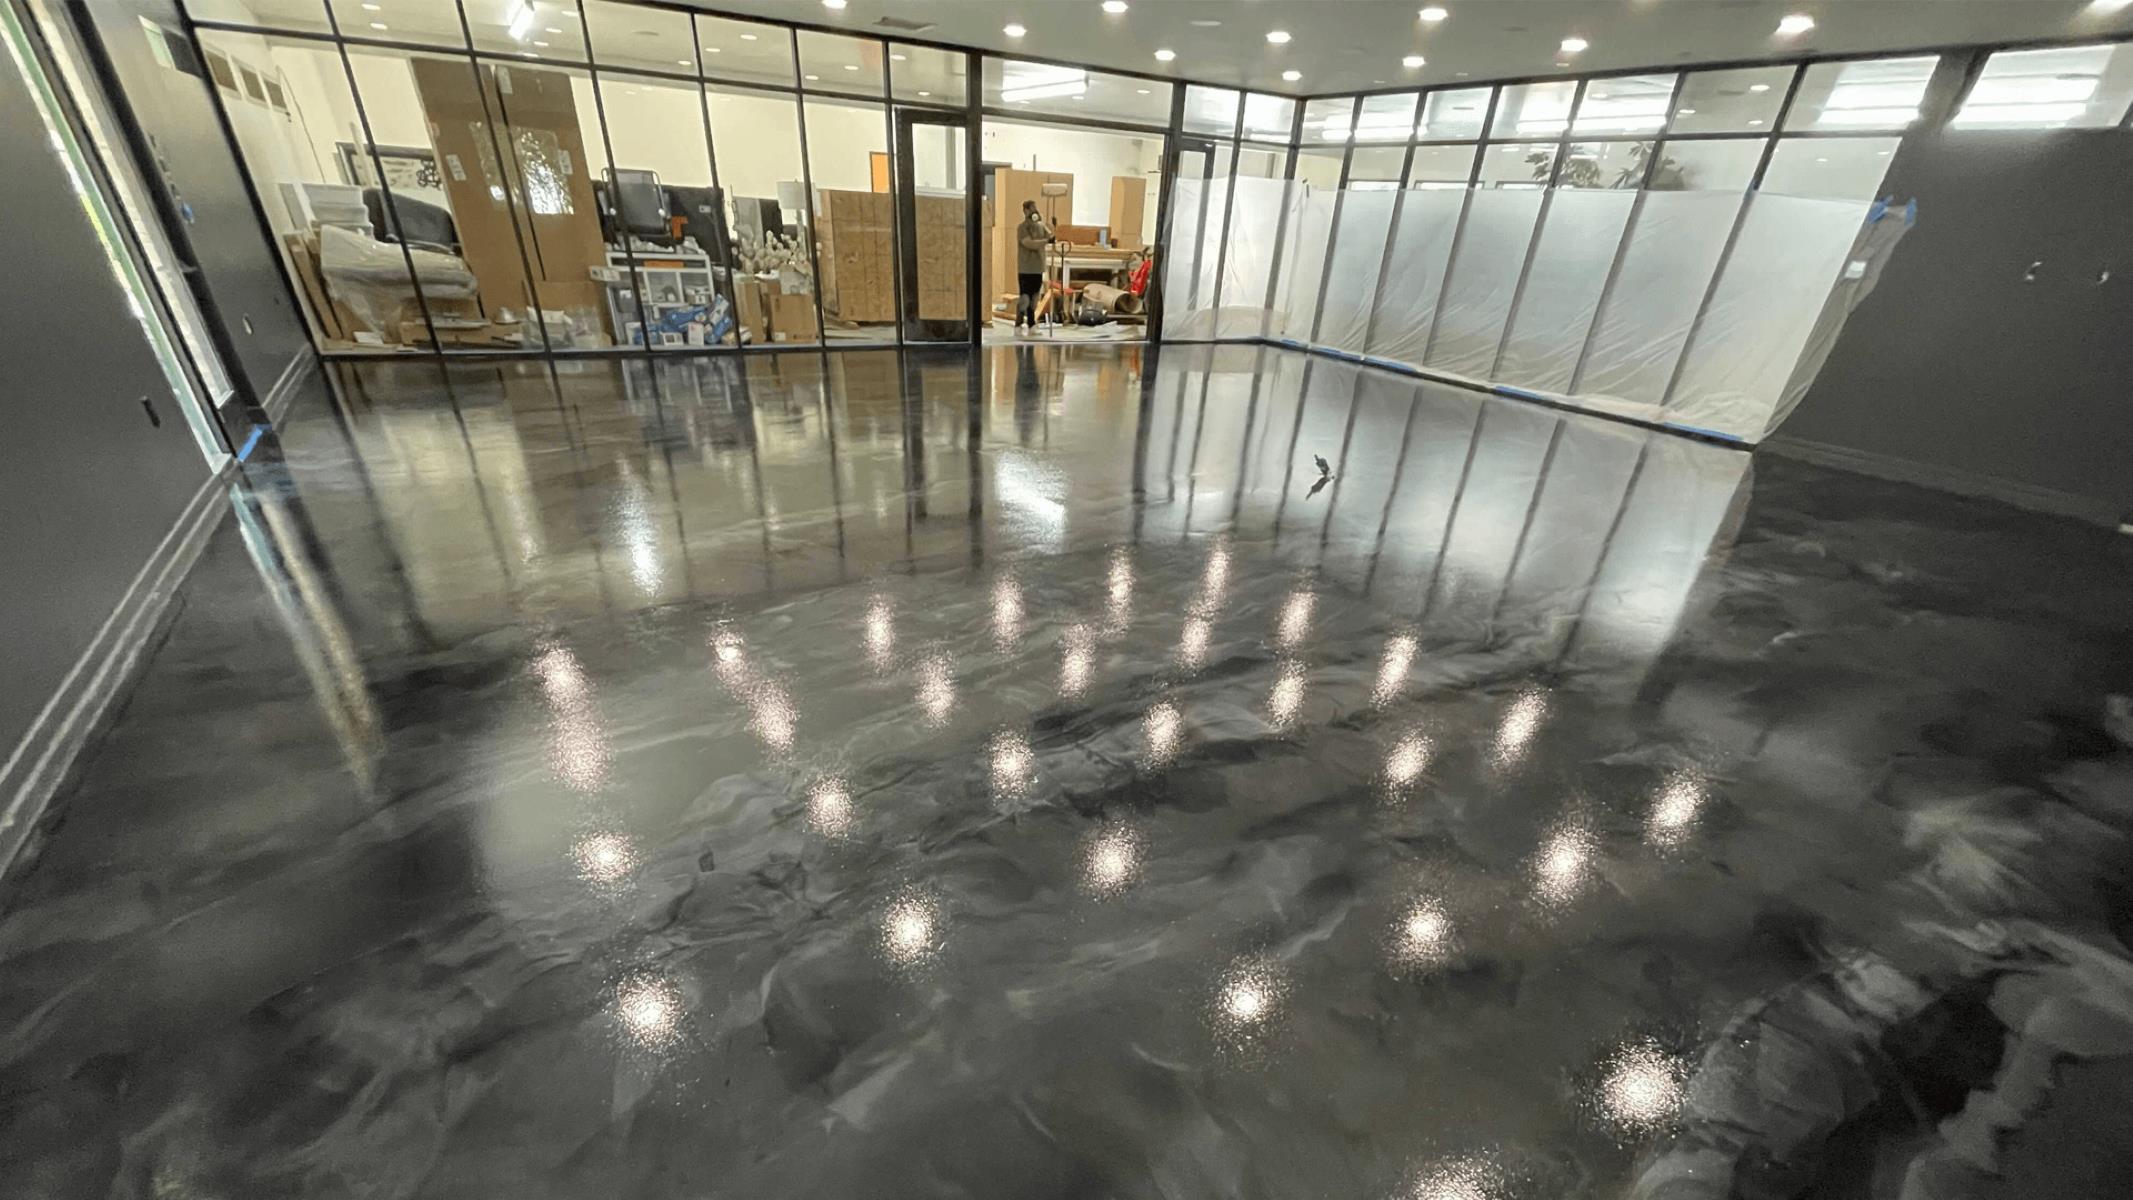 How To Make Concrete Shiny Like Glass